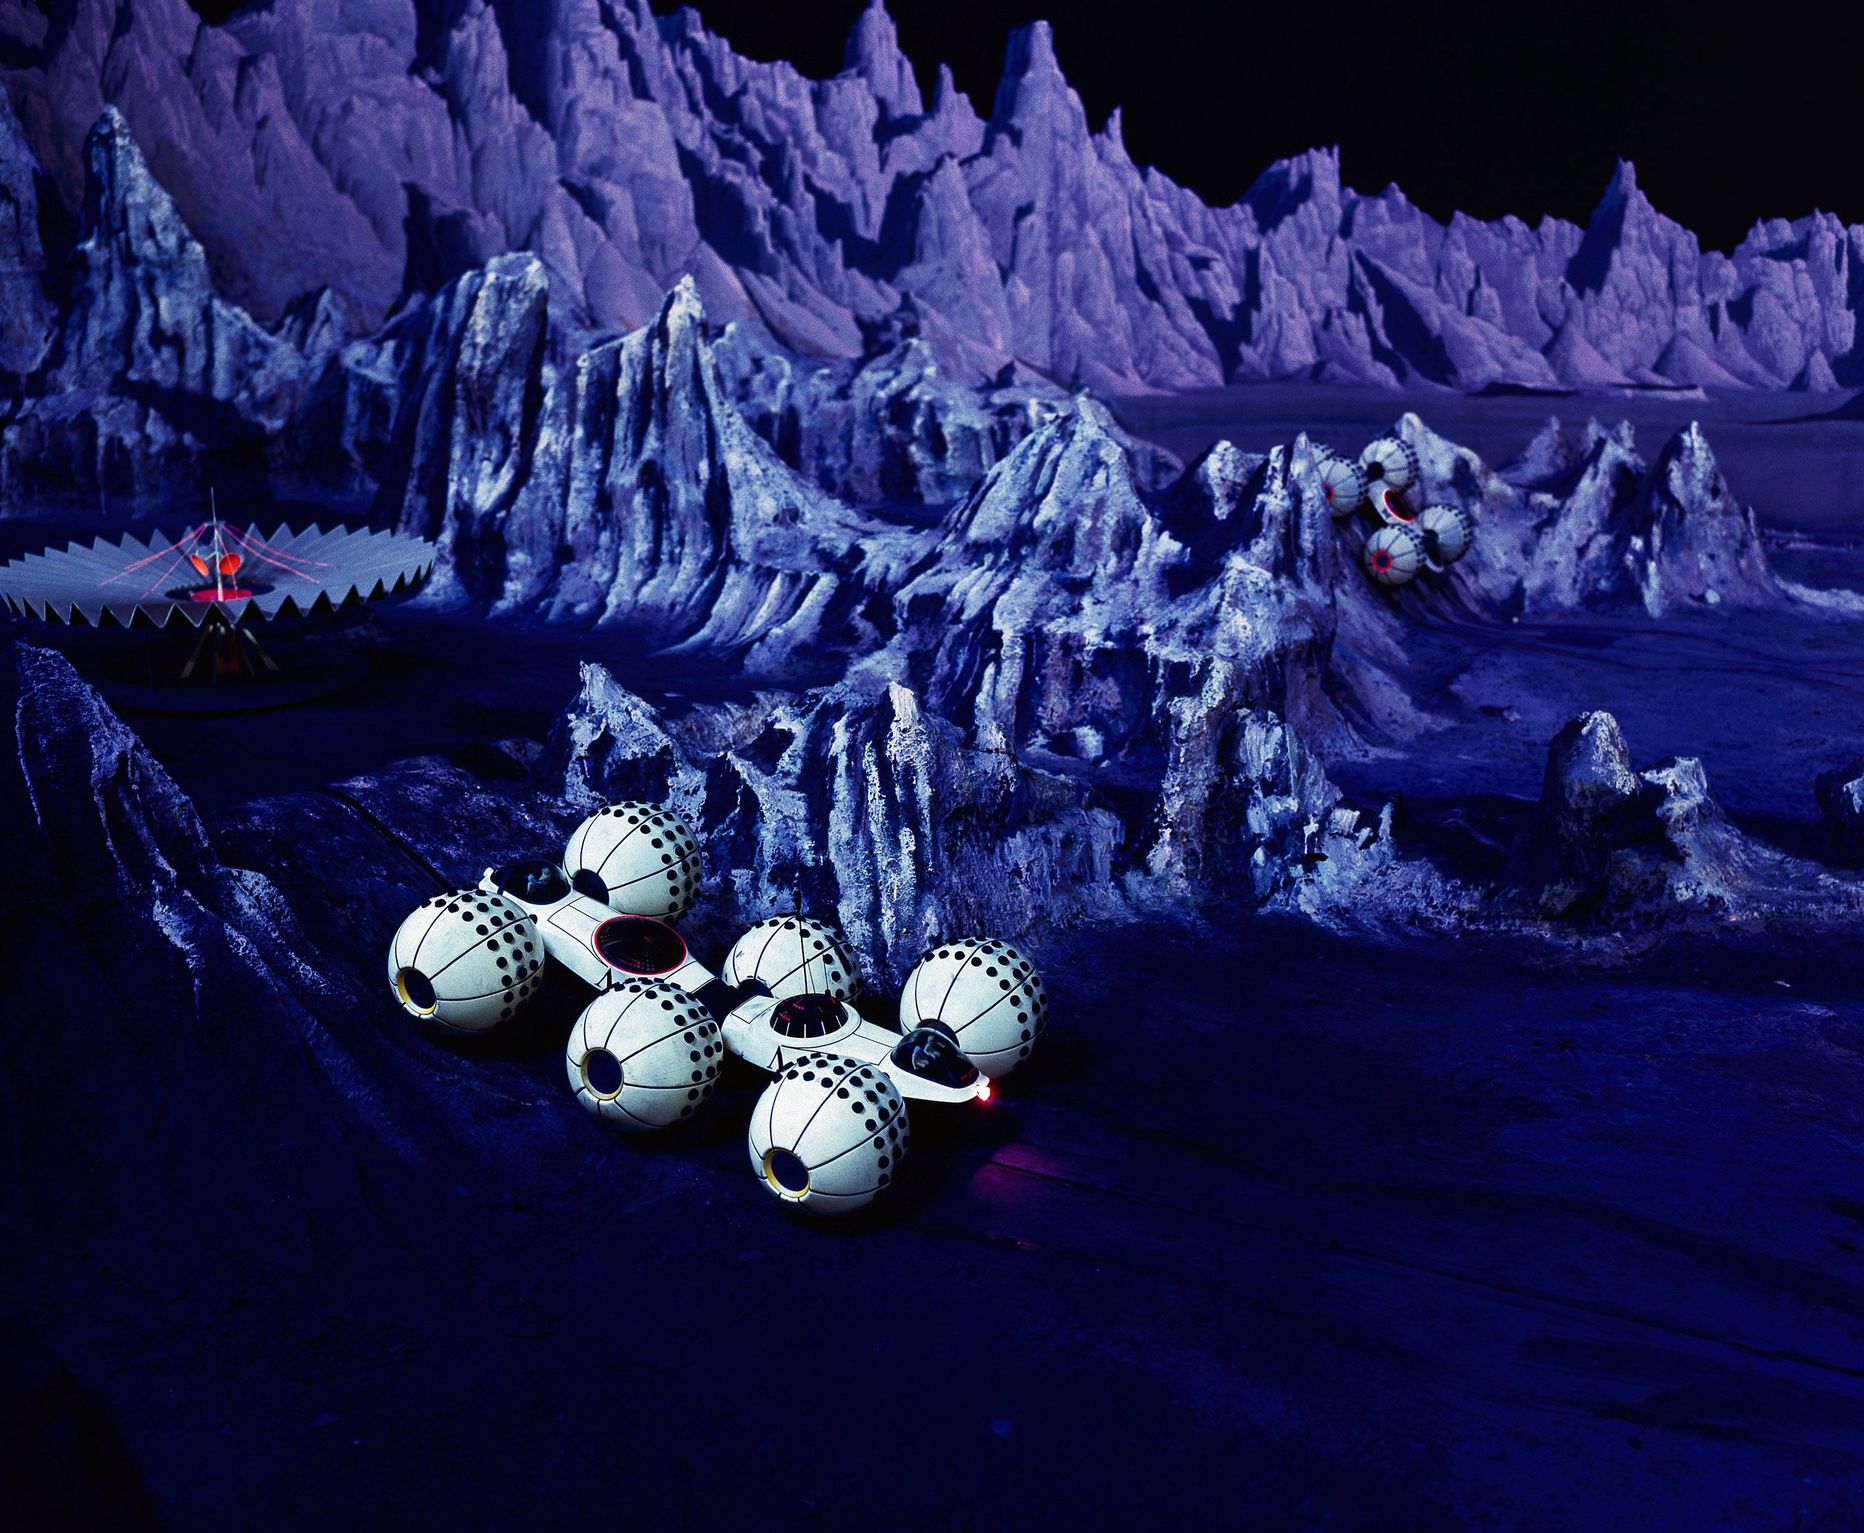 1964. aasta maailmanäitusel esitletud visioon Kuu koloniseerimisest, tegu küll ameeriklaste nägemusega. Pilt on illustreeriva tähendusega.